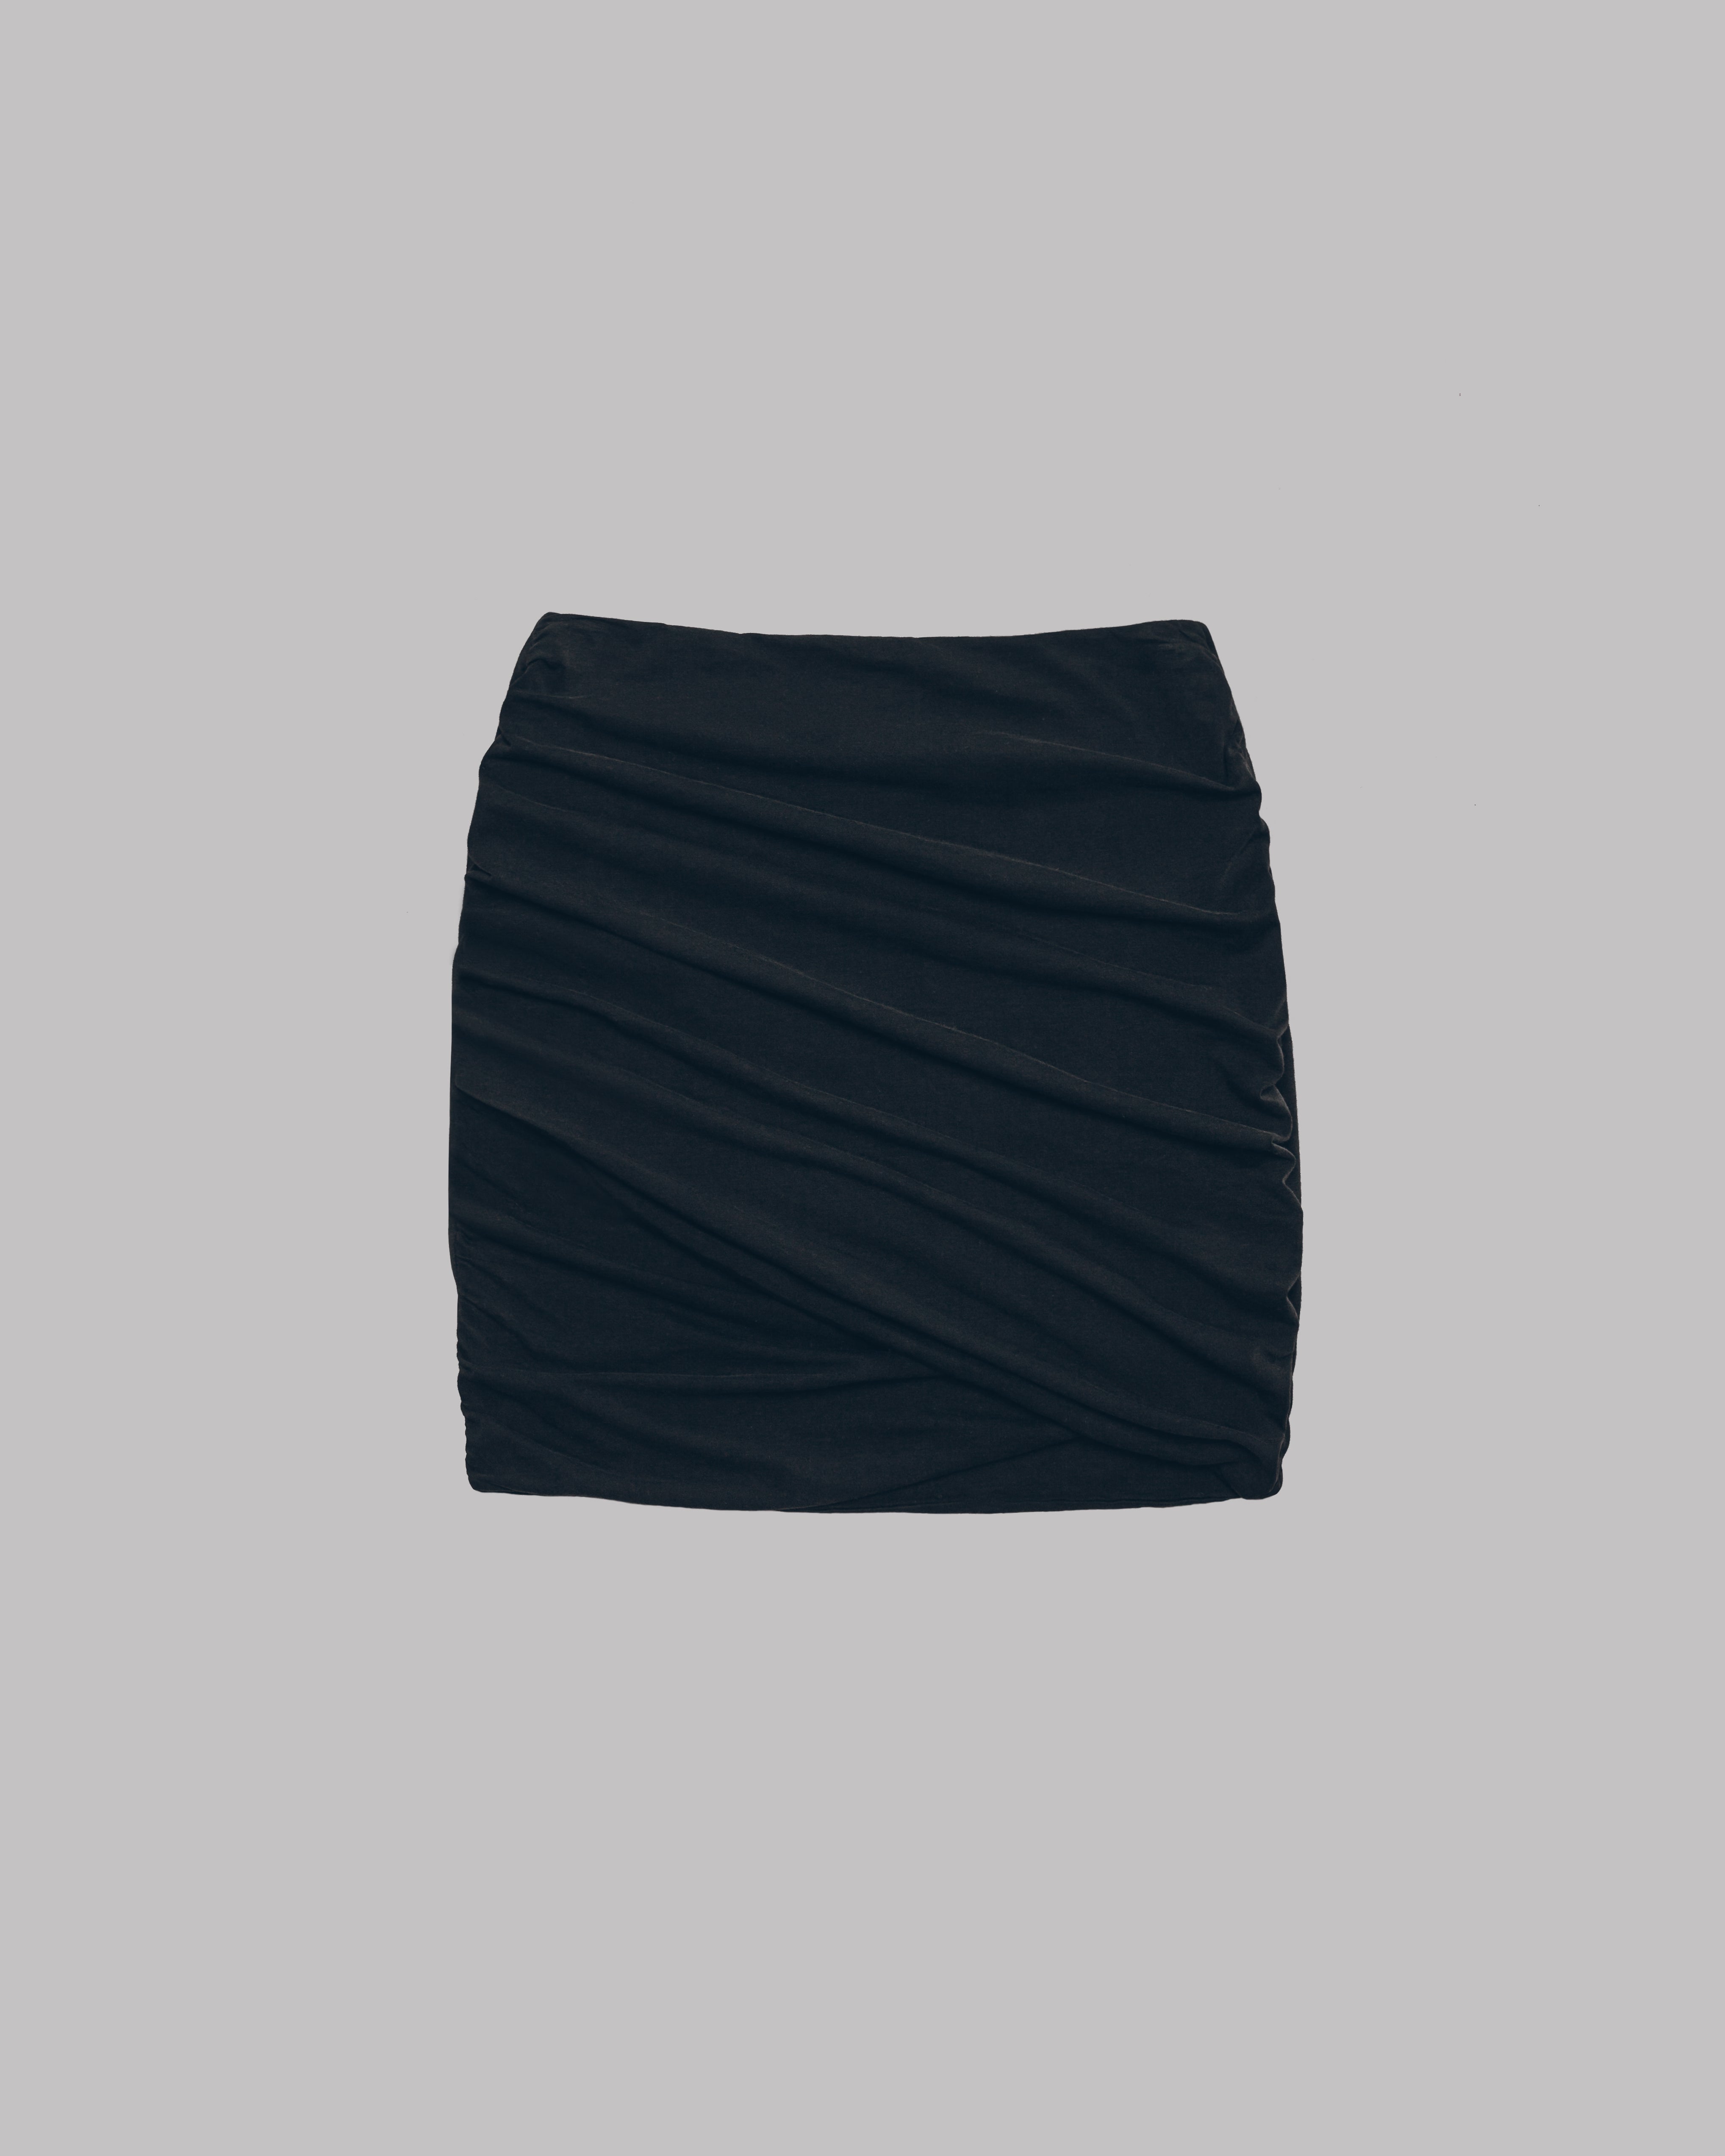 The Dark Draped Skirt